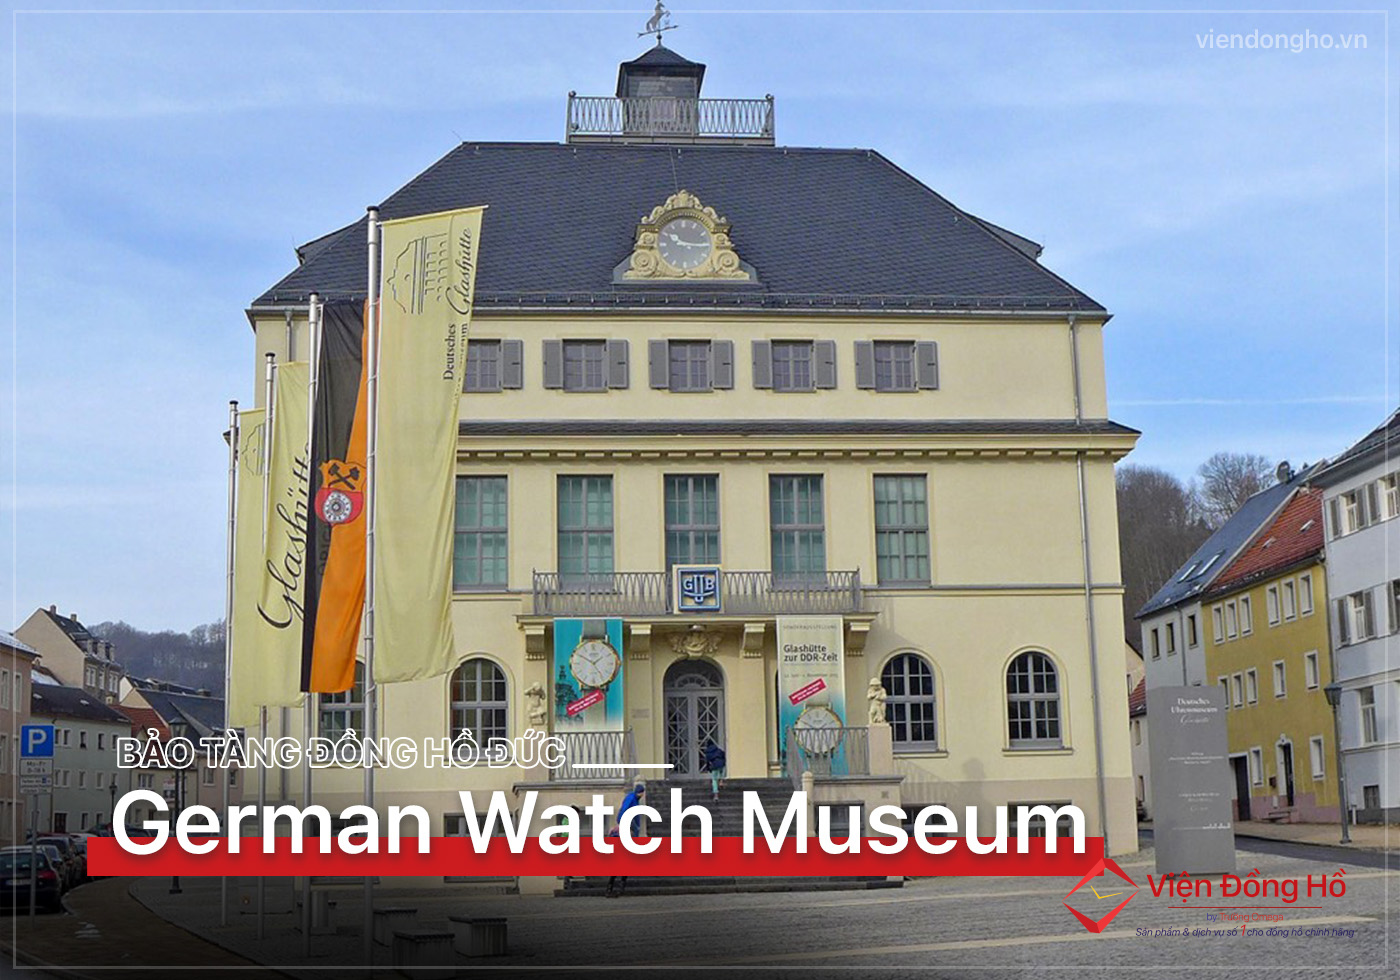 German Watch Museum - Tham quan bao tang dong ho Duc 17